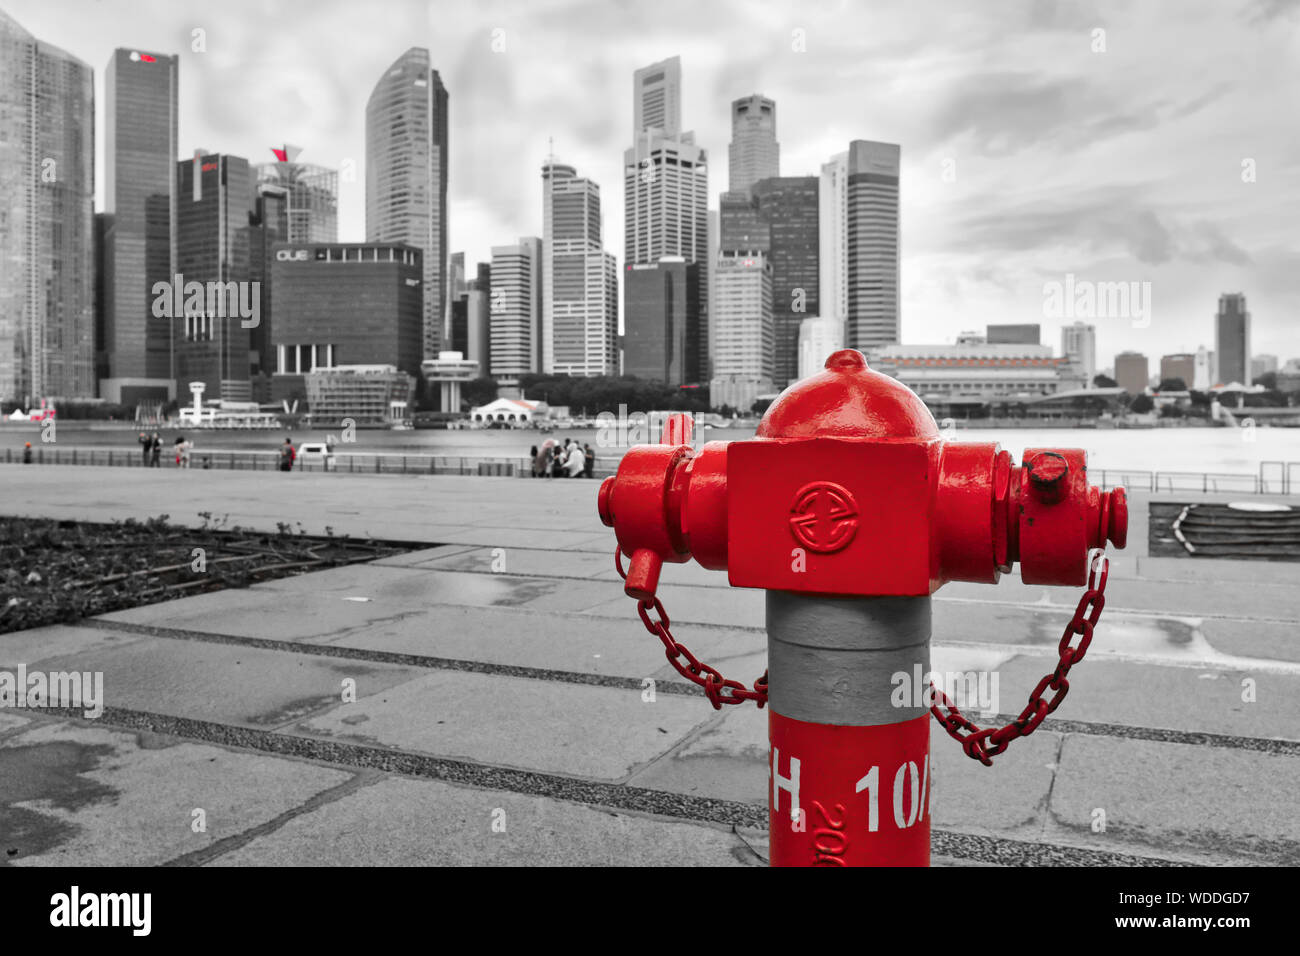 Una visione creativa di un rosso idrante acqua di Marina Bay, Singapore, spicca contro il grigio alti edifici del quartiere degli affari in b/g Foto Stock